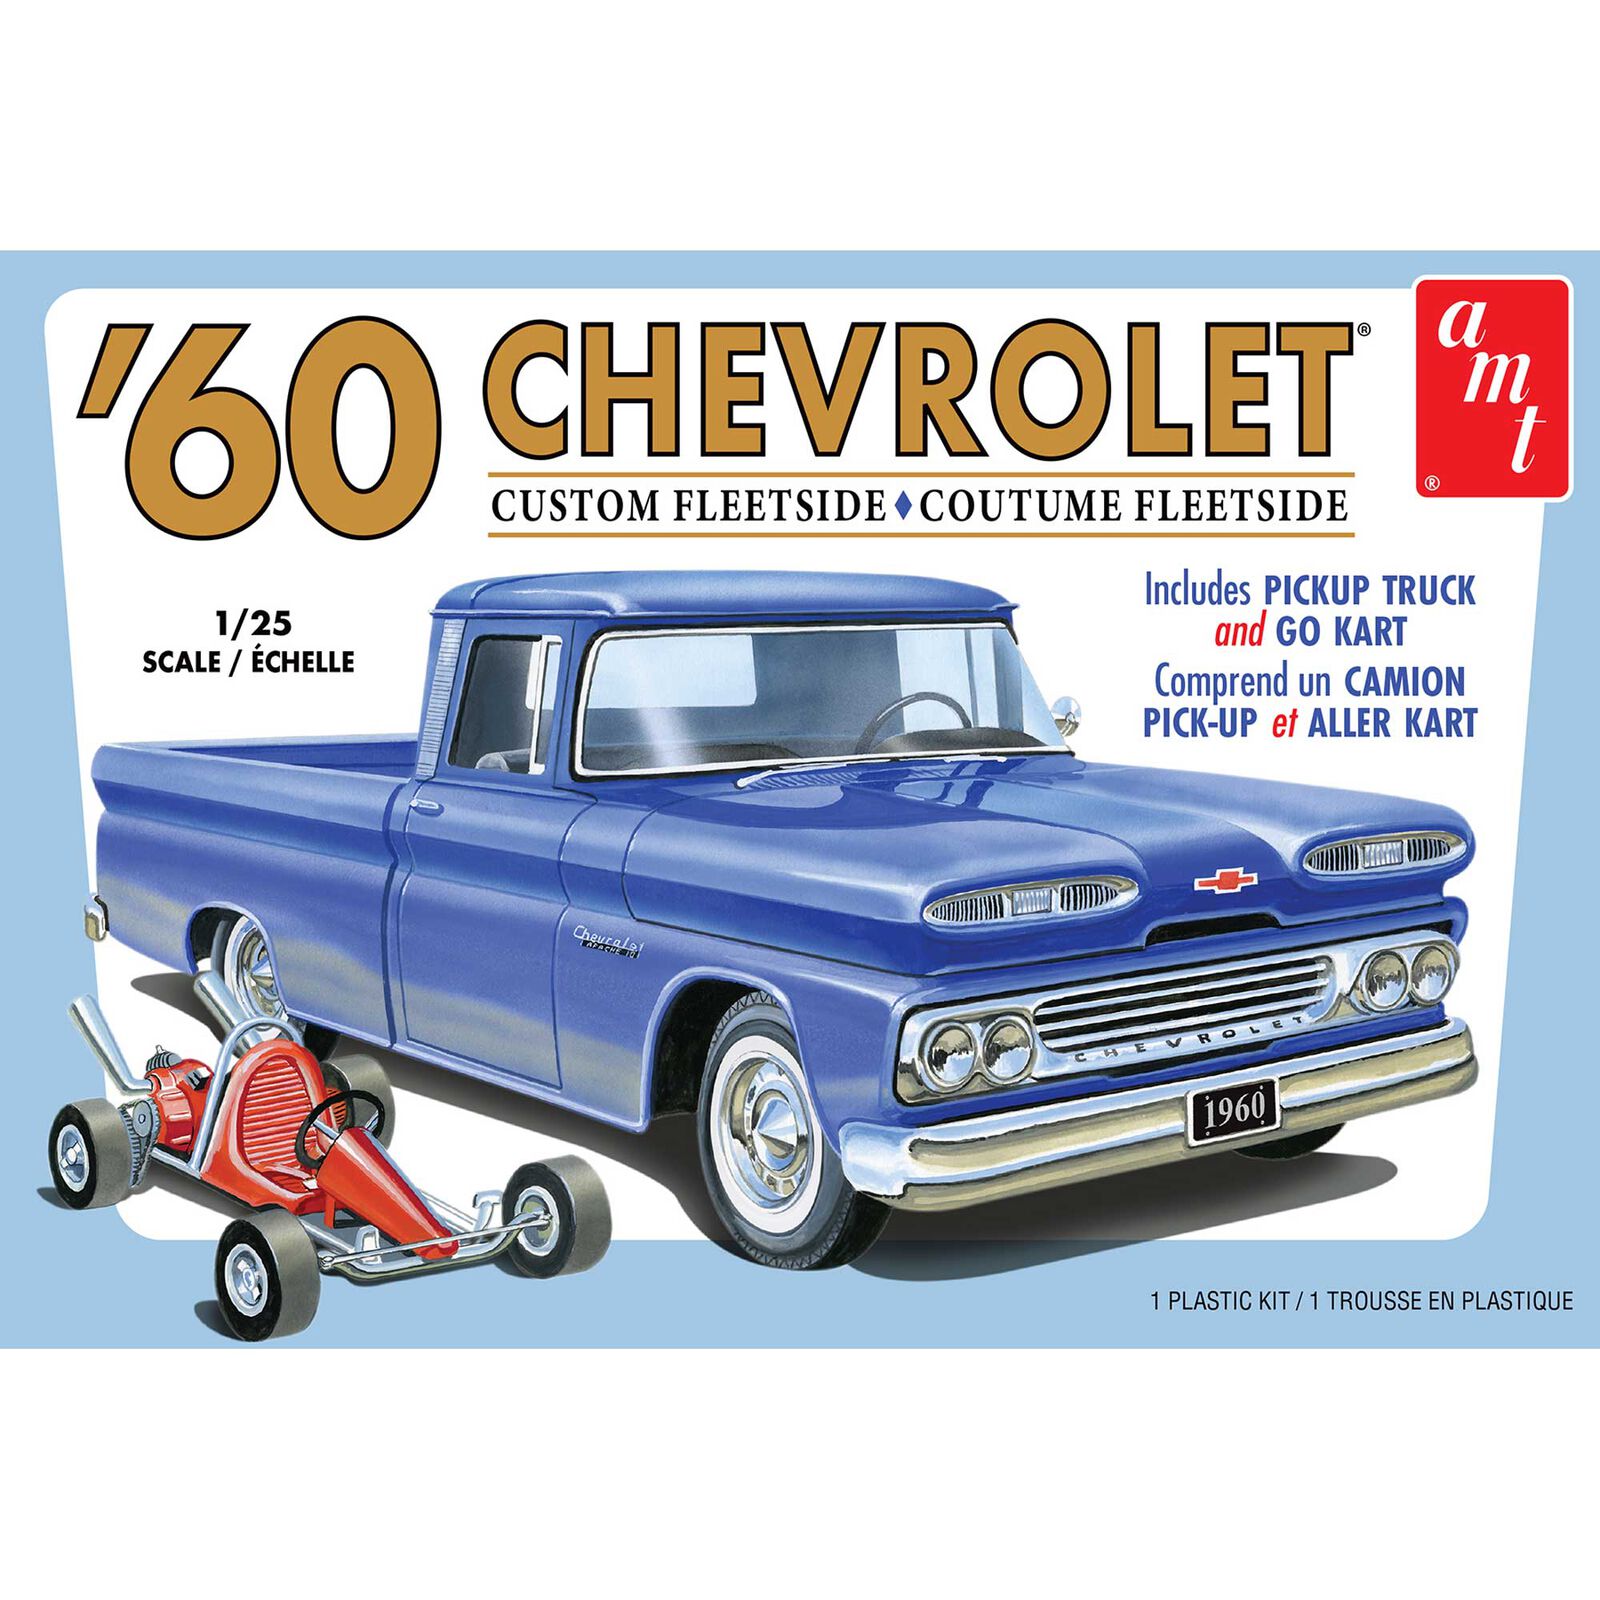 1/25 1960 Chevy Fleetside Pickup with Go Kart, Model Kit